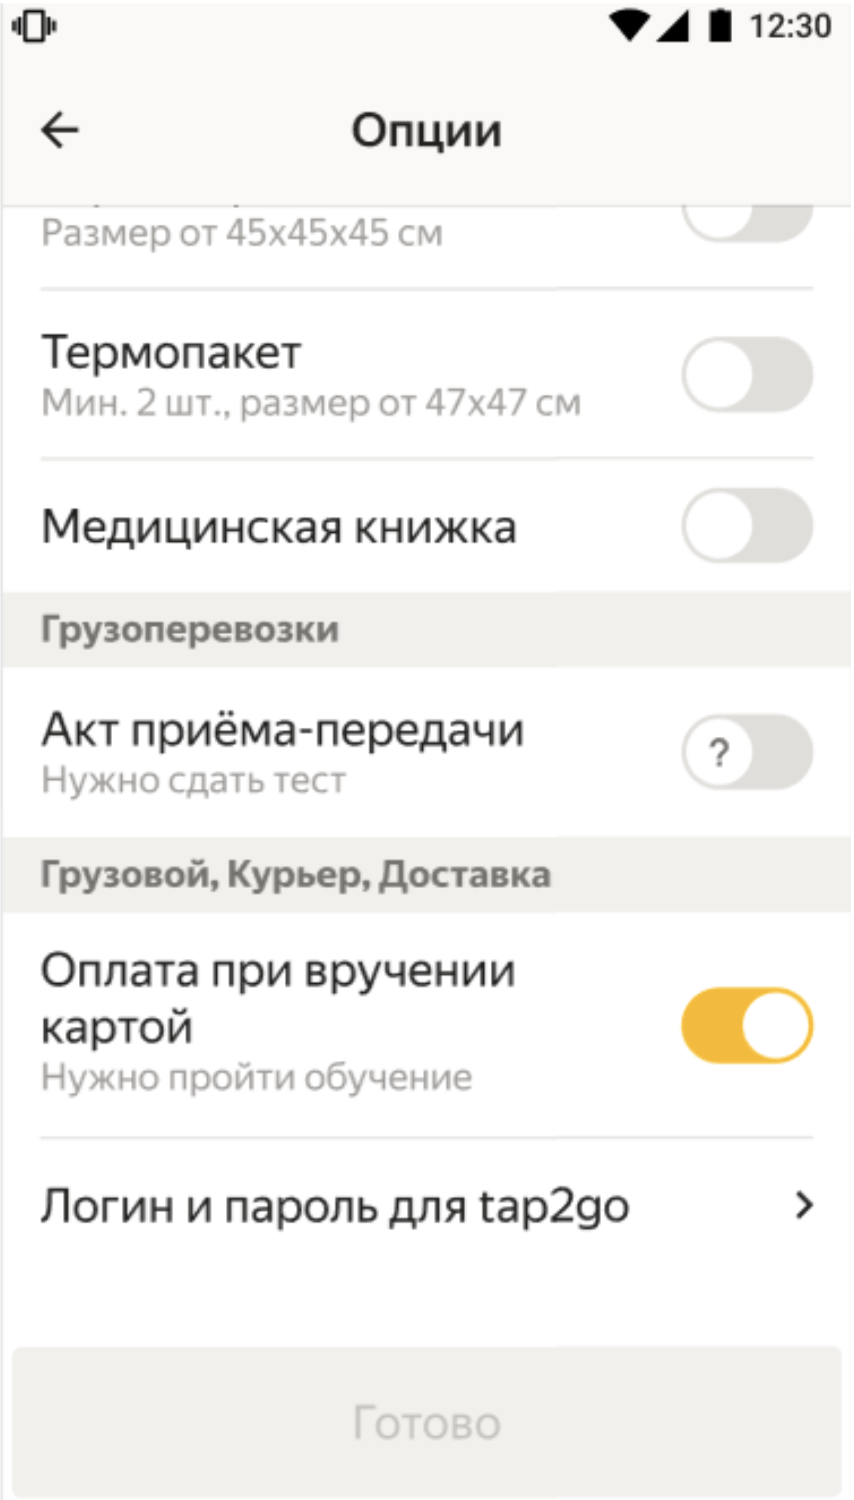 Раздел «Опции» в Яндекс Про